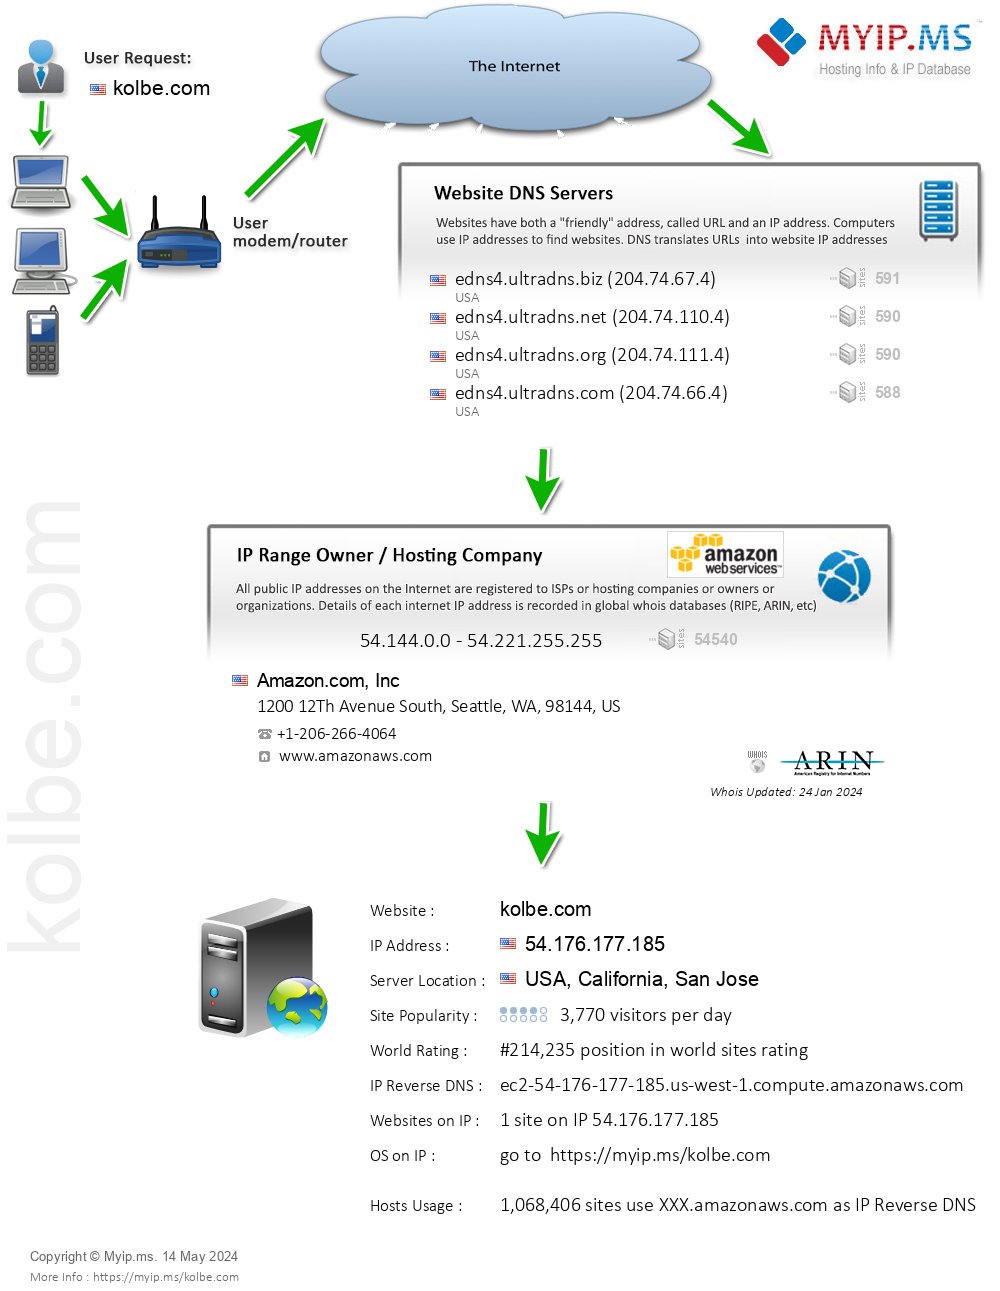 Kolbe.com - Website Hosting Visual IP Diagram